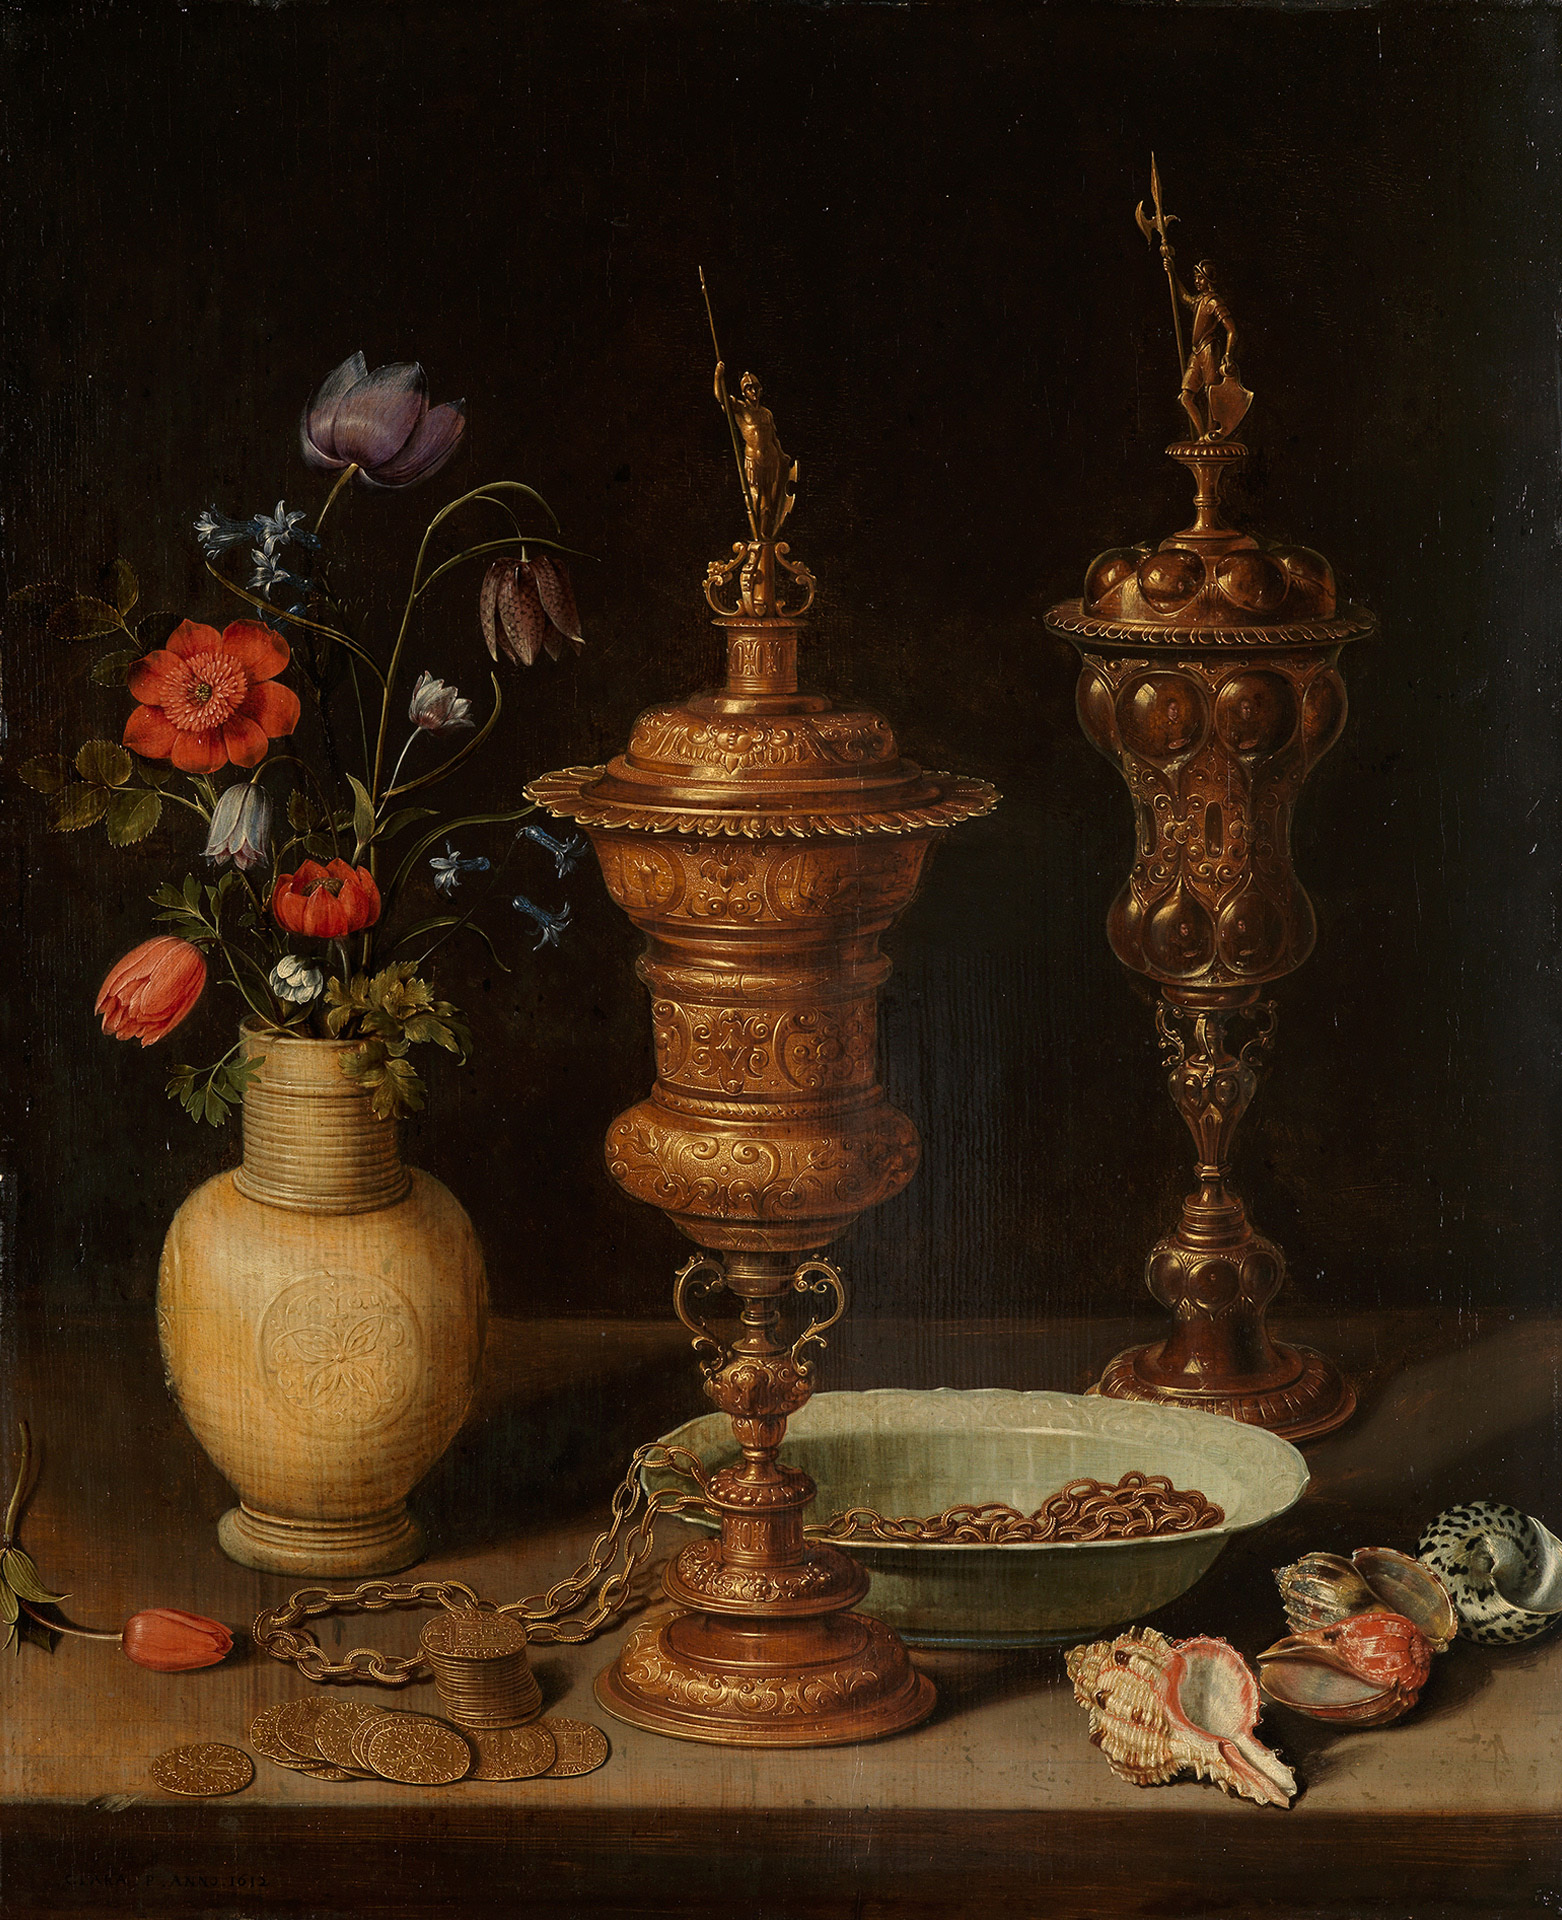 Abbildung des Stilllebens mit Blumen und Goldpokalen von Clara Peeters. Zwei prunkvolle Goldpokale stehen auf einem Tisch. Daneben eine Vase mit bunten Blumen. Auf dem Tisch liegen Muscheln, Münzen und eine Schale.